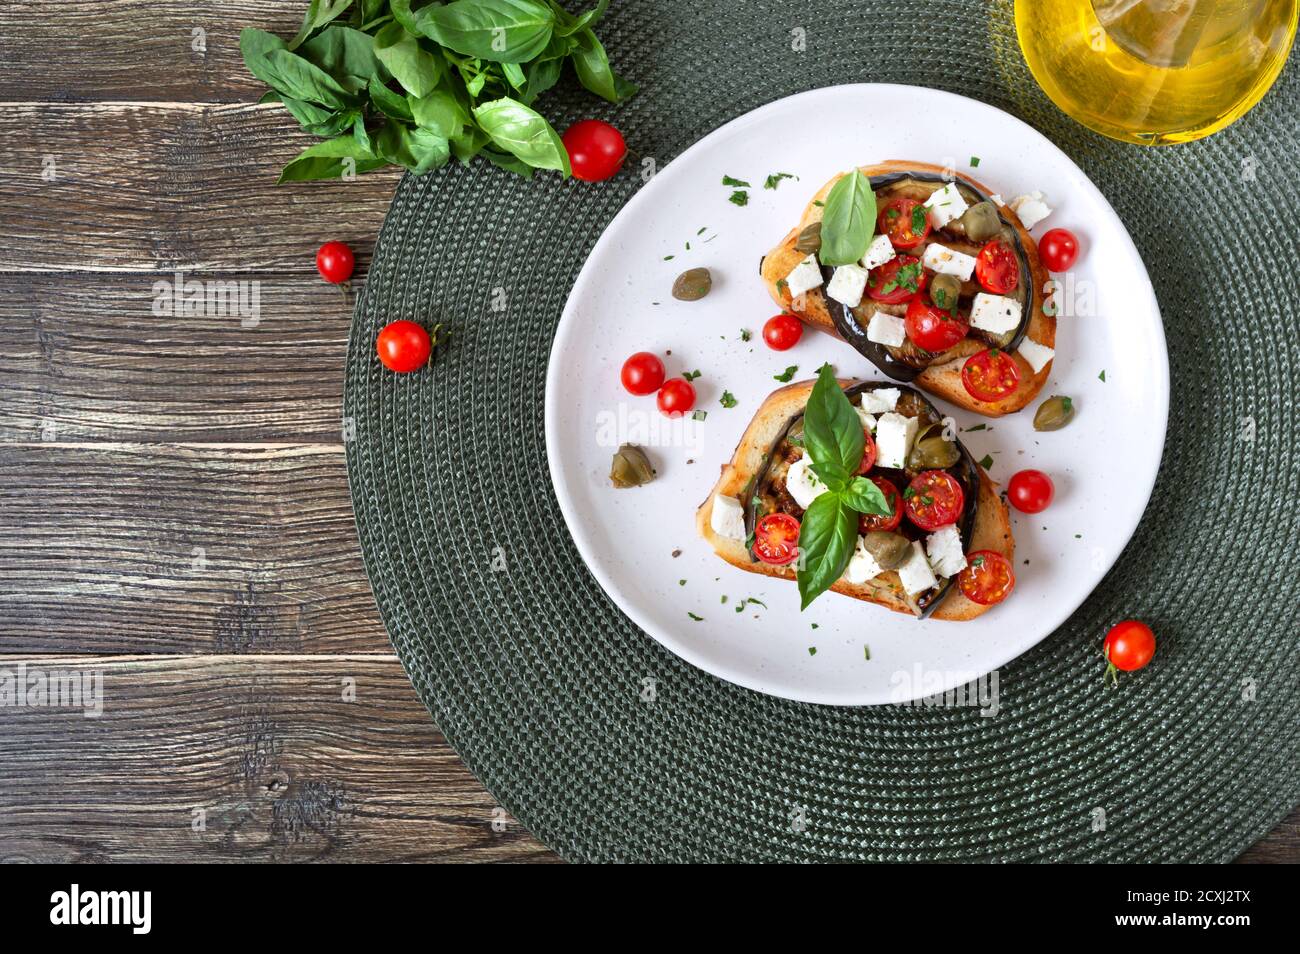 Bruschetta all'aglio con melanzane, feta, pomodori ciliegini, capperi. Utile antipasto vegetariano. Cucina italiana. Vista dall'alto Foto Stock